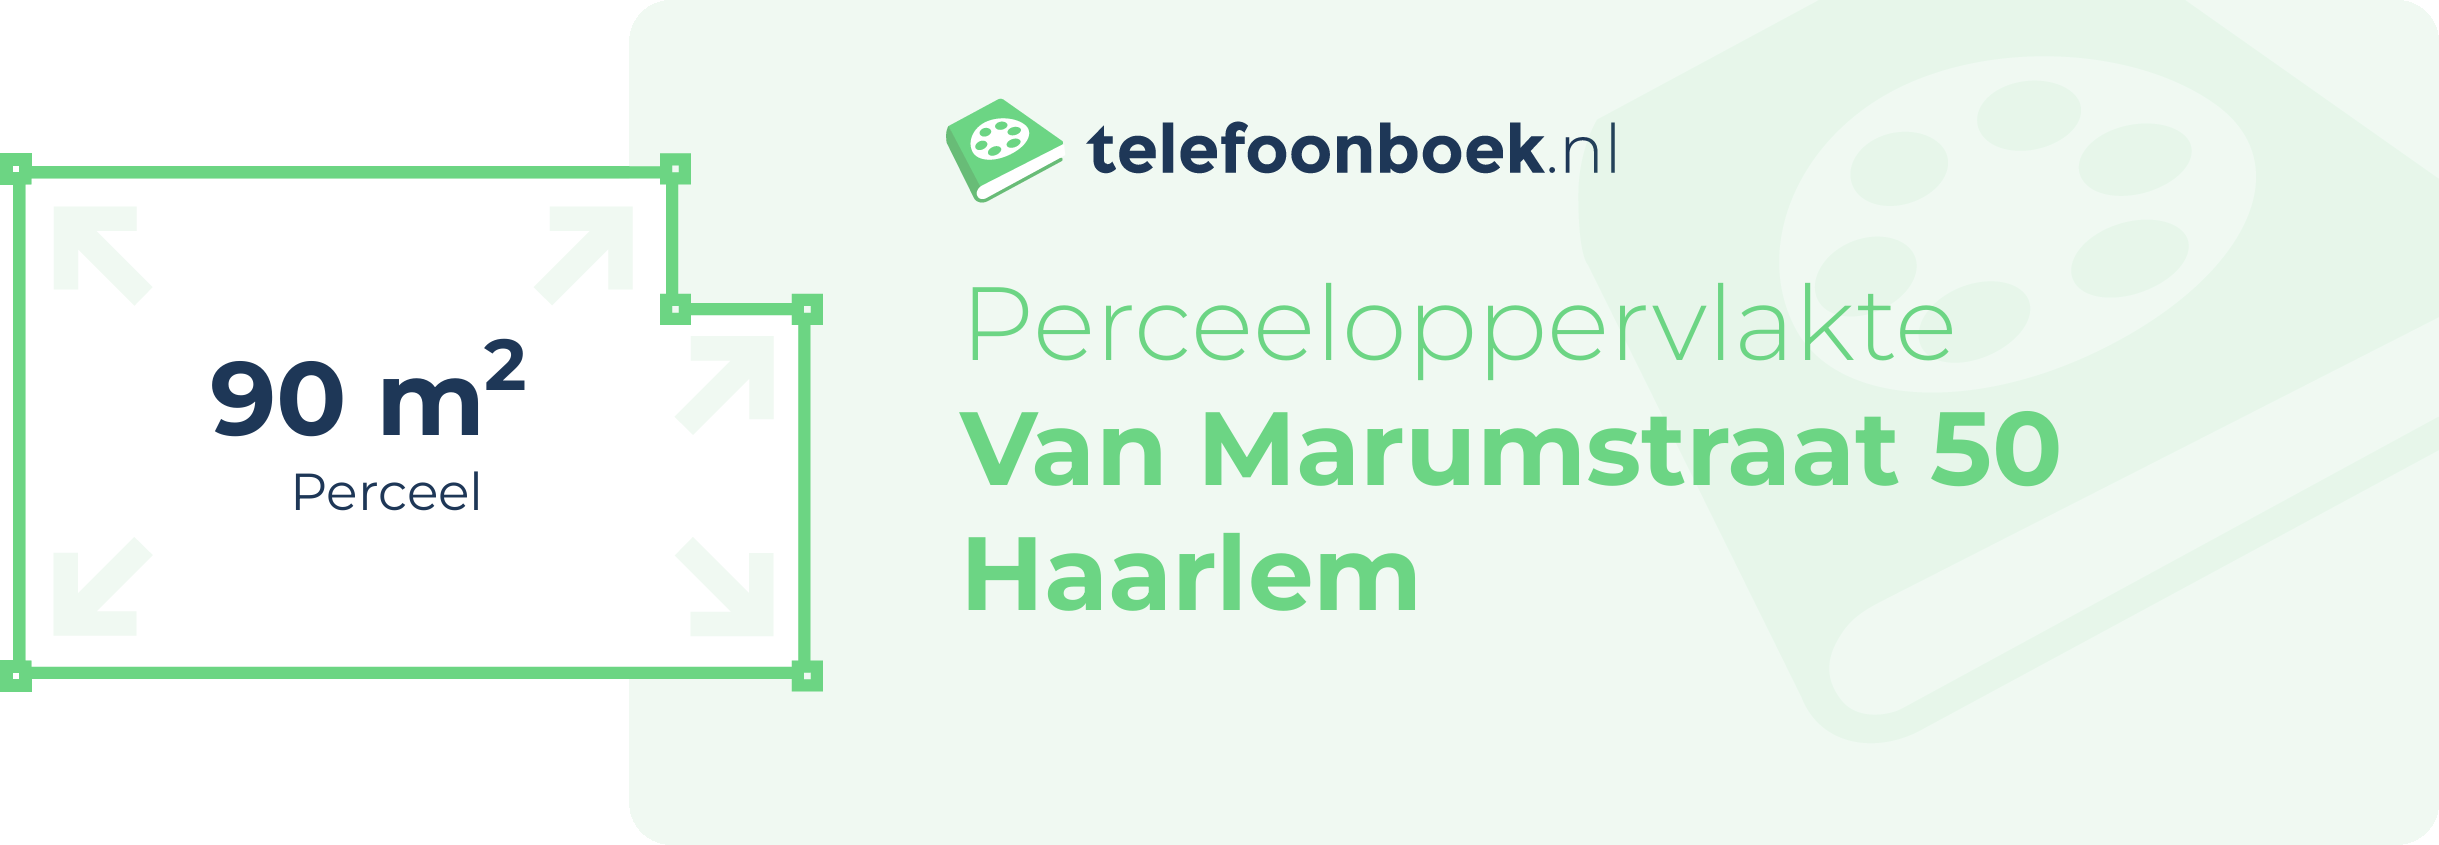 Perceeloppervlakte Van Marumstraat 50 Haarlem